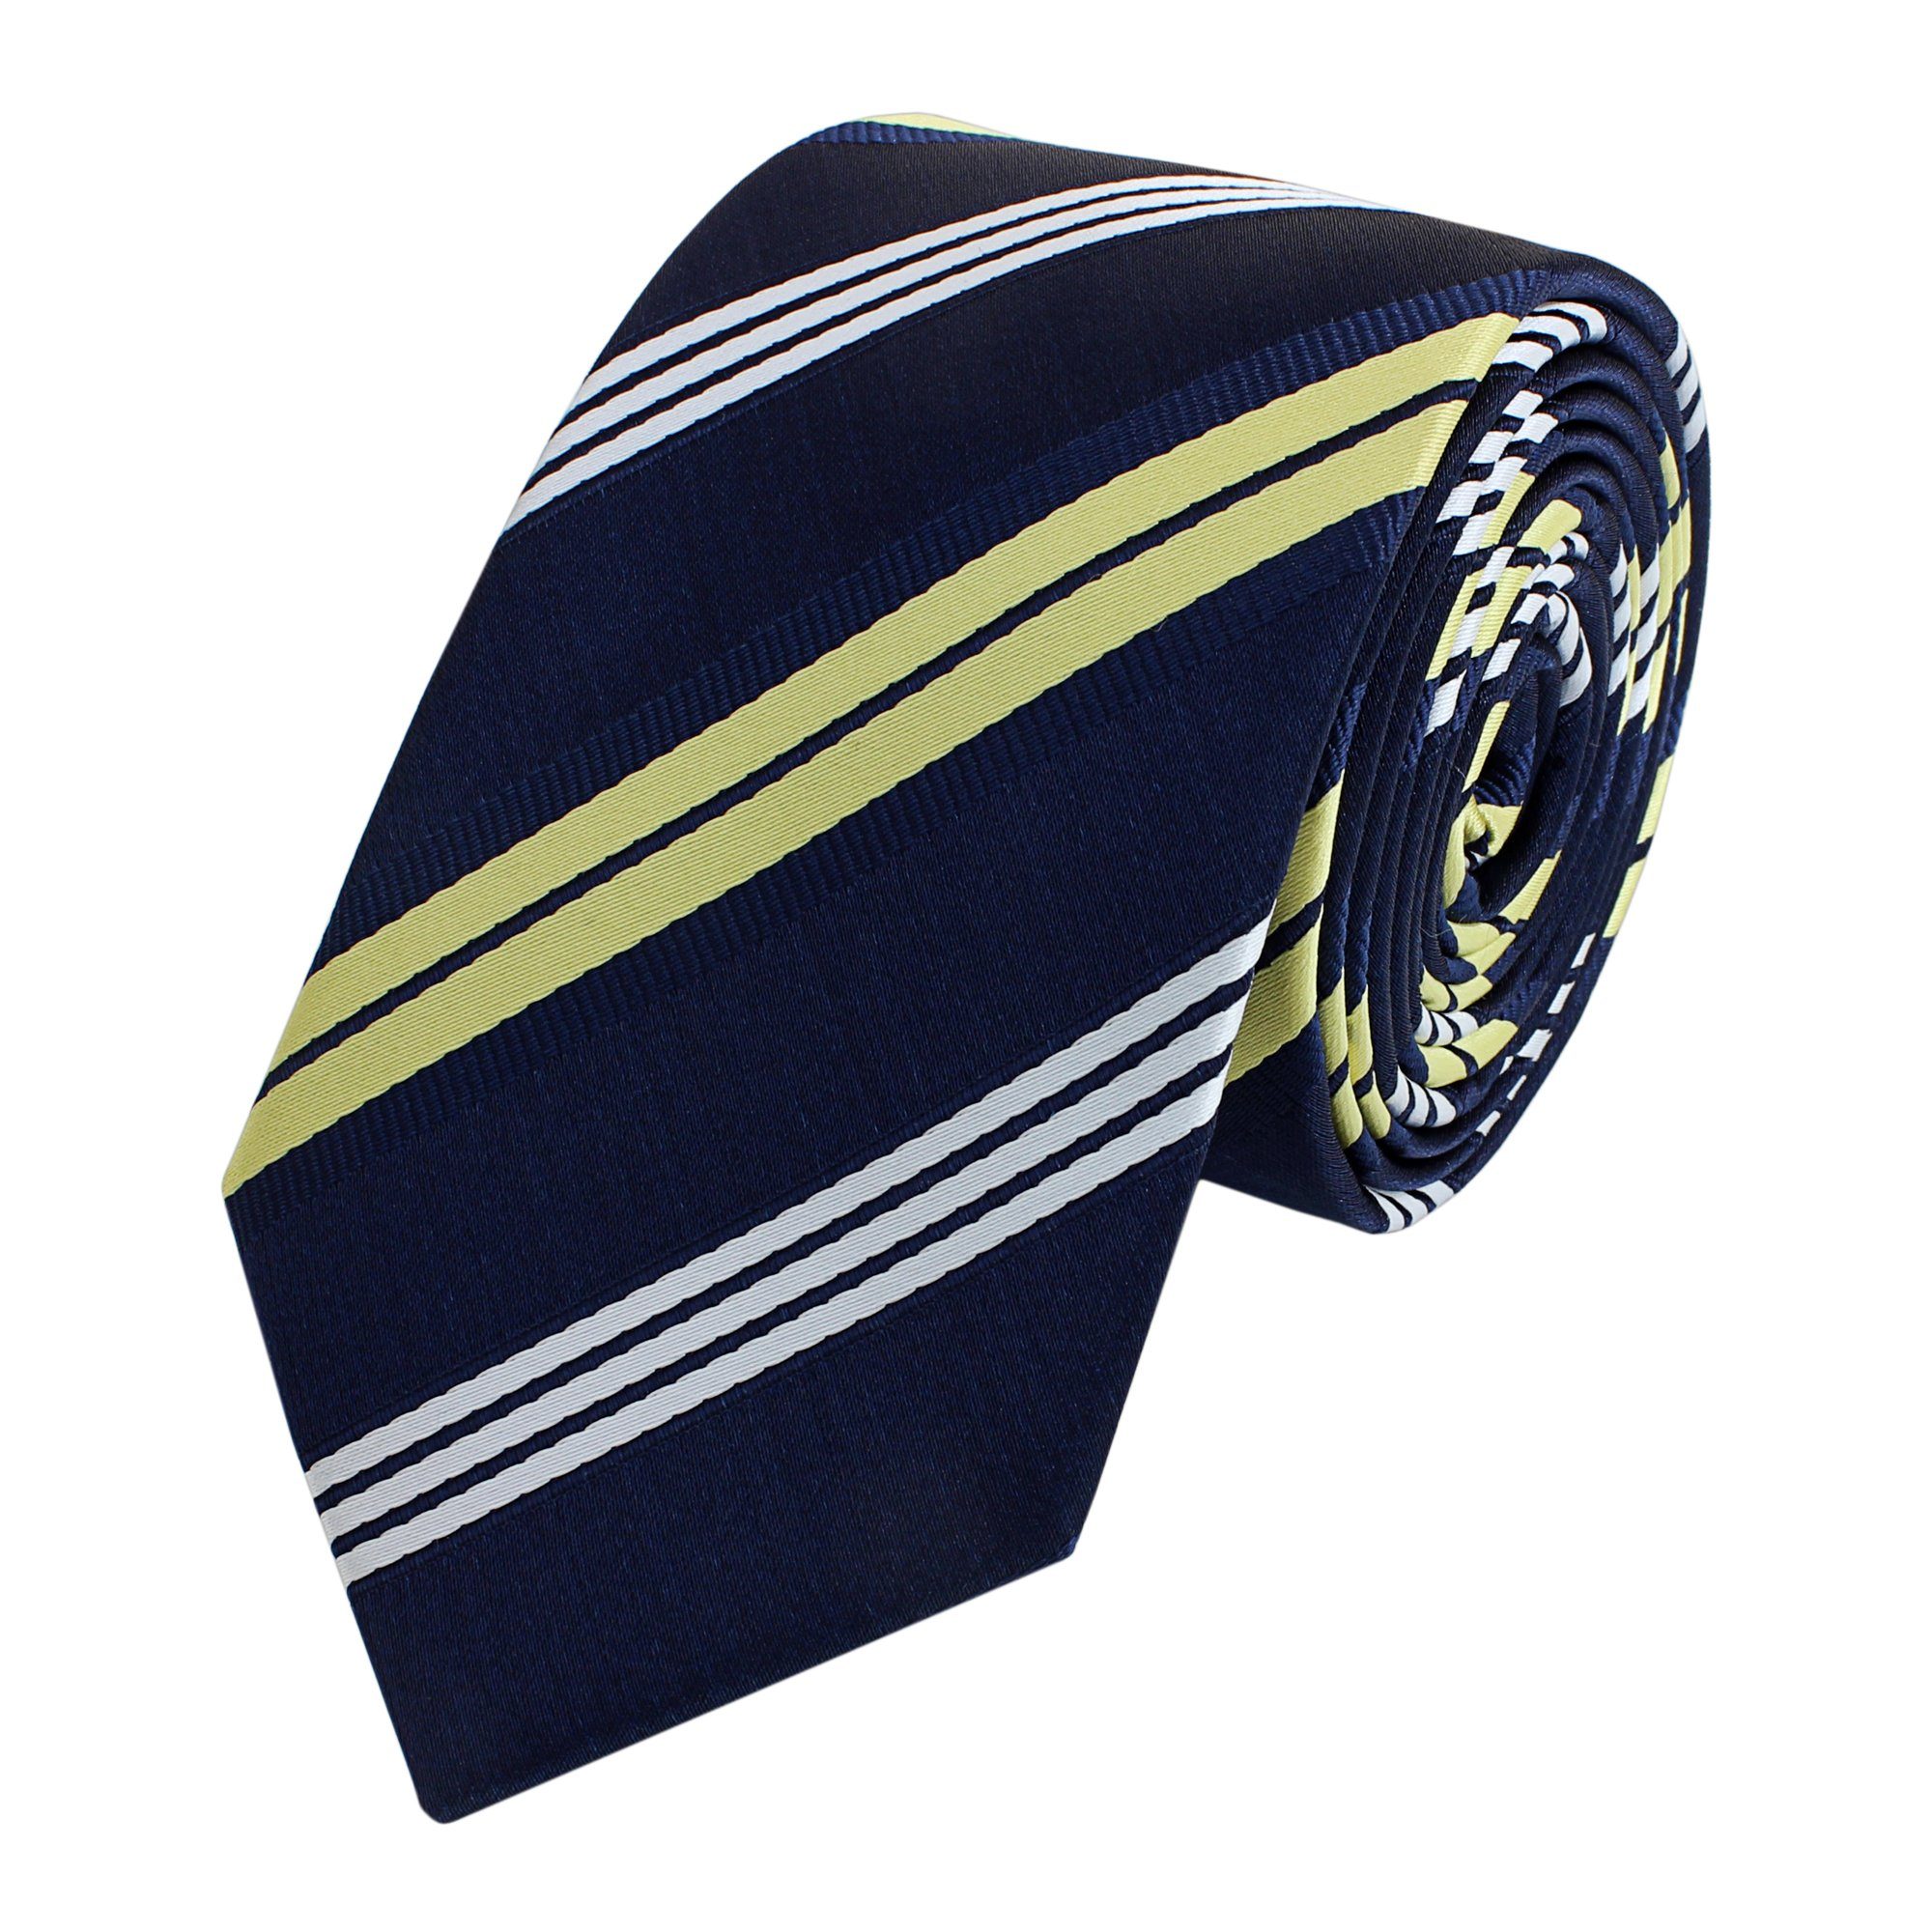 Fabio Farini Krawatte gestreifte Herren Krawatte - Tie mit Streifen in 6cm oder 8cm Breite (ohne Box, Gestreift) Schmal (6cm), Blau/Gold/Weiß | Breite Krawatten